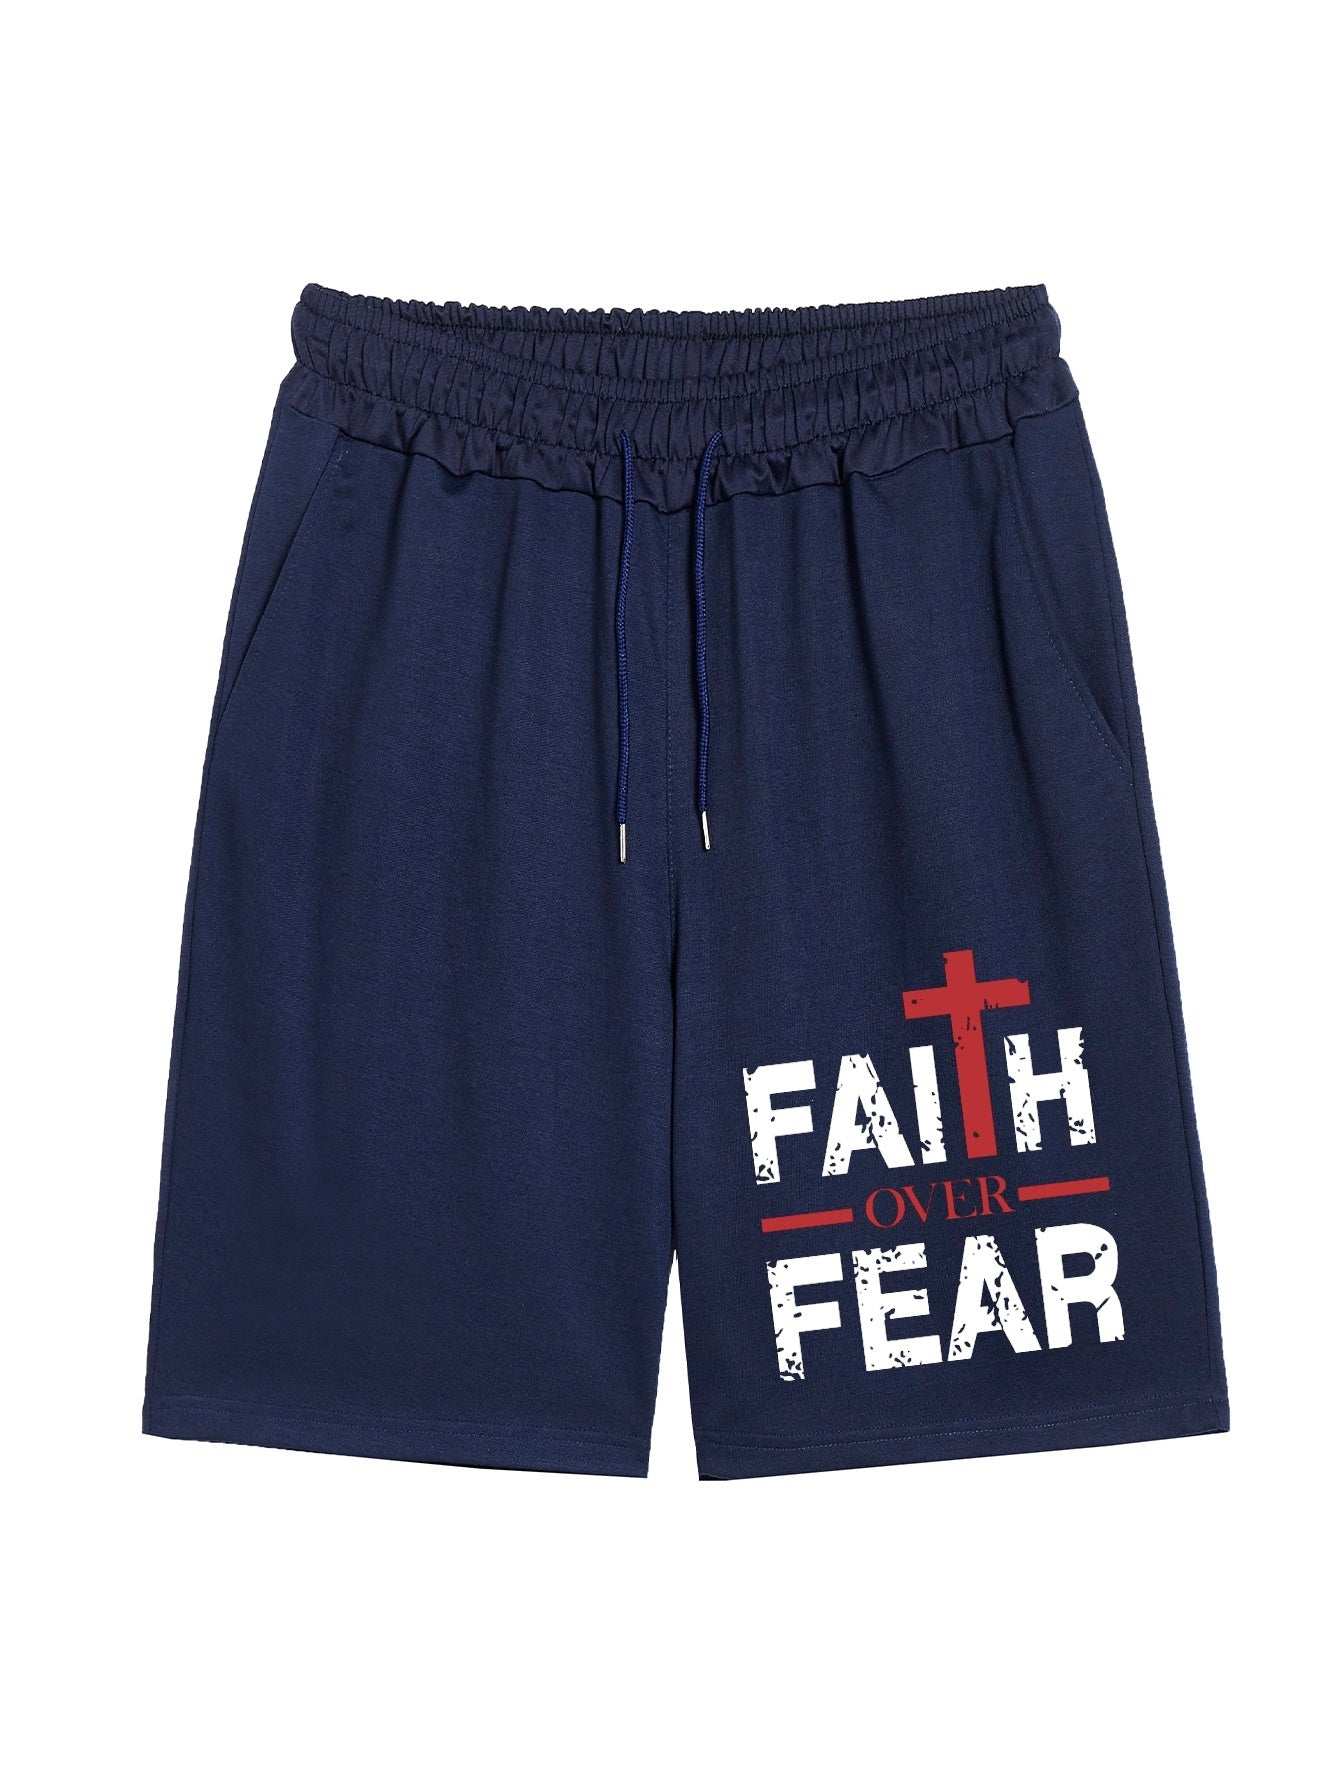 Faith Over Fear Men's Christian Shorts claimedbygoddesigns